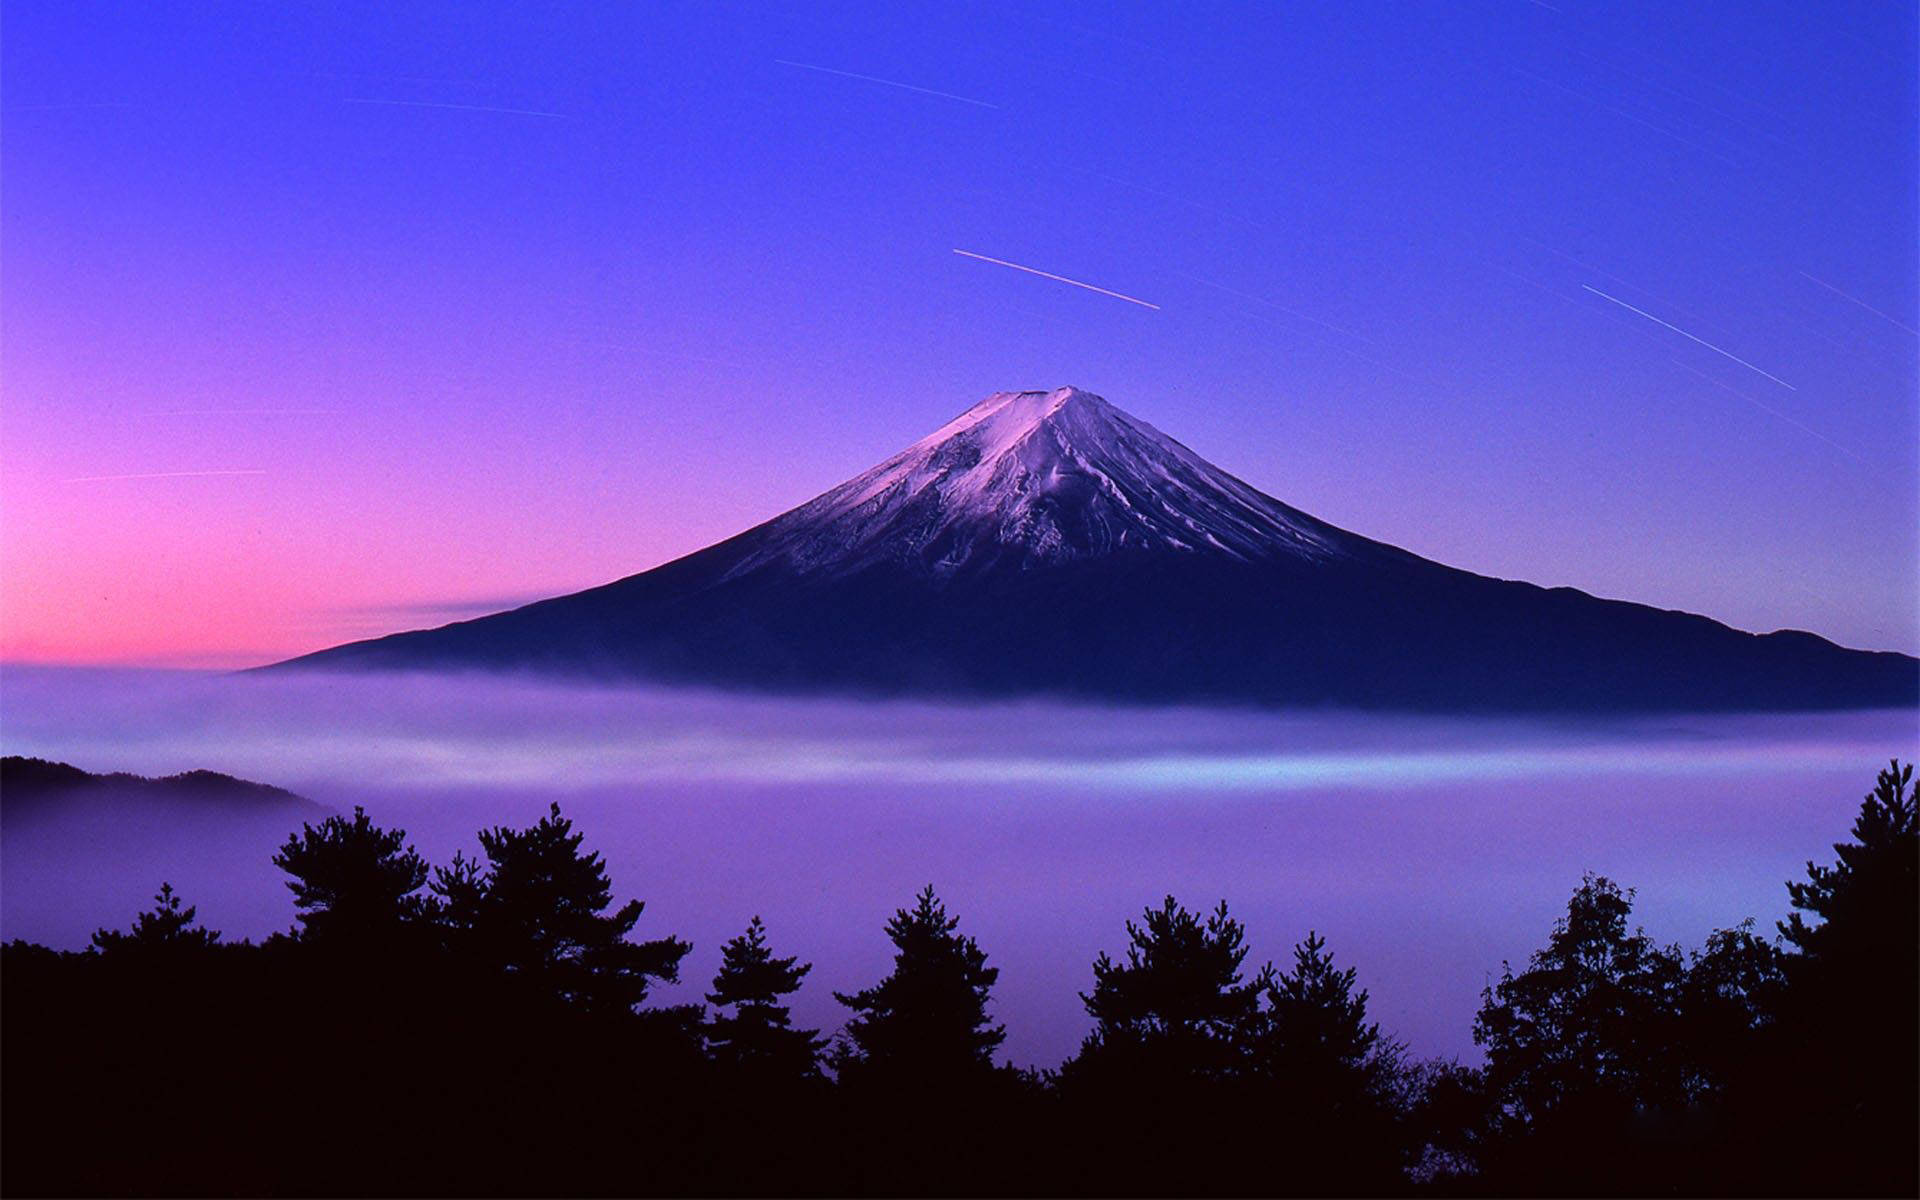 Stjärnfallöver Mount Fuji. Wallpaper